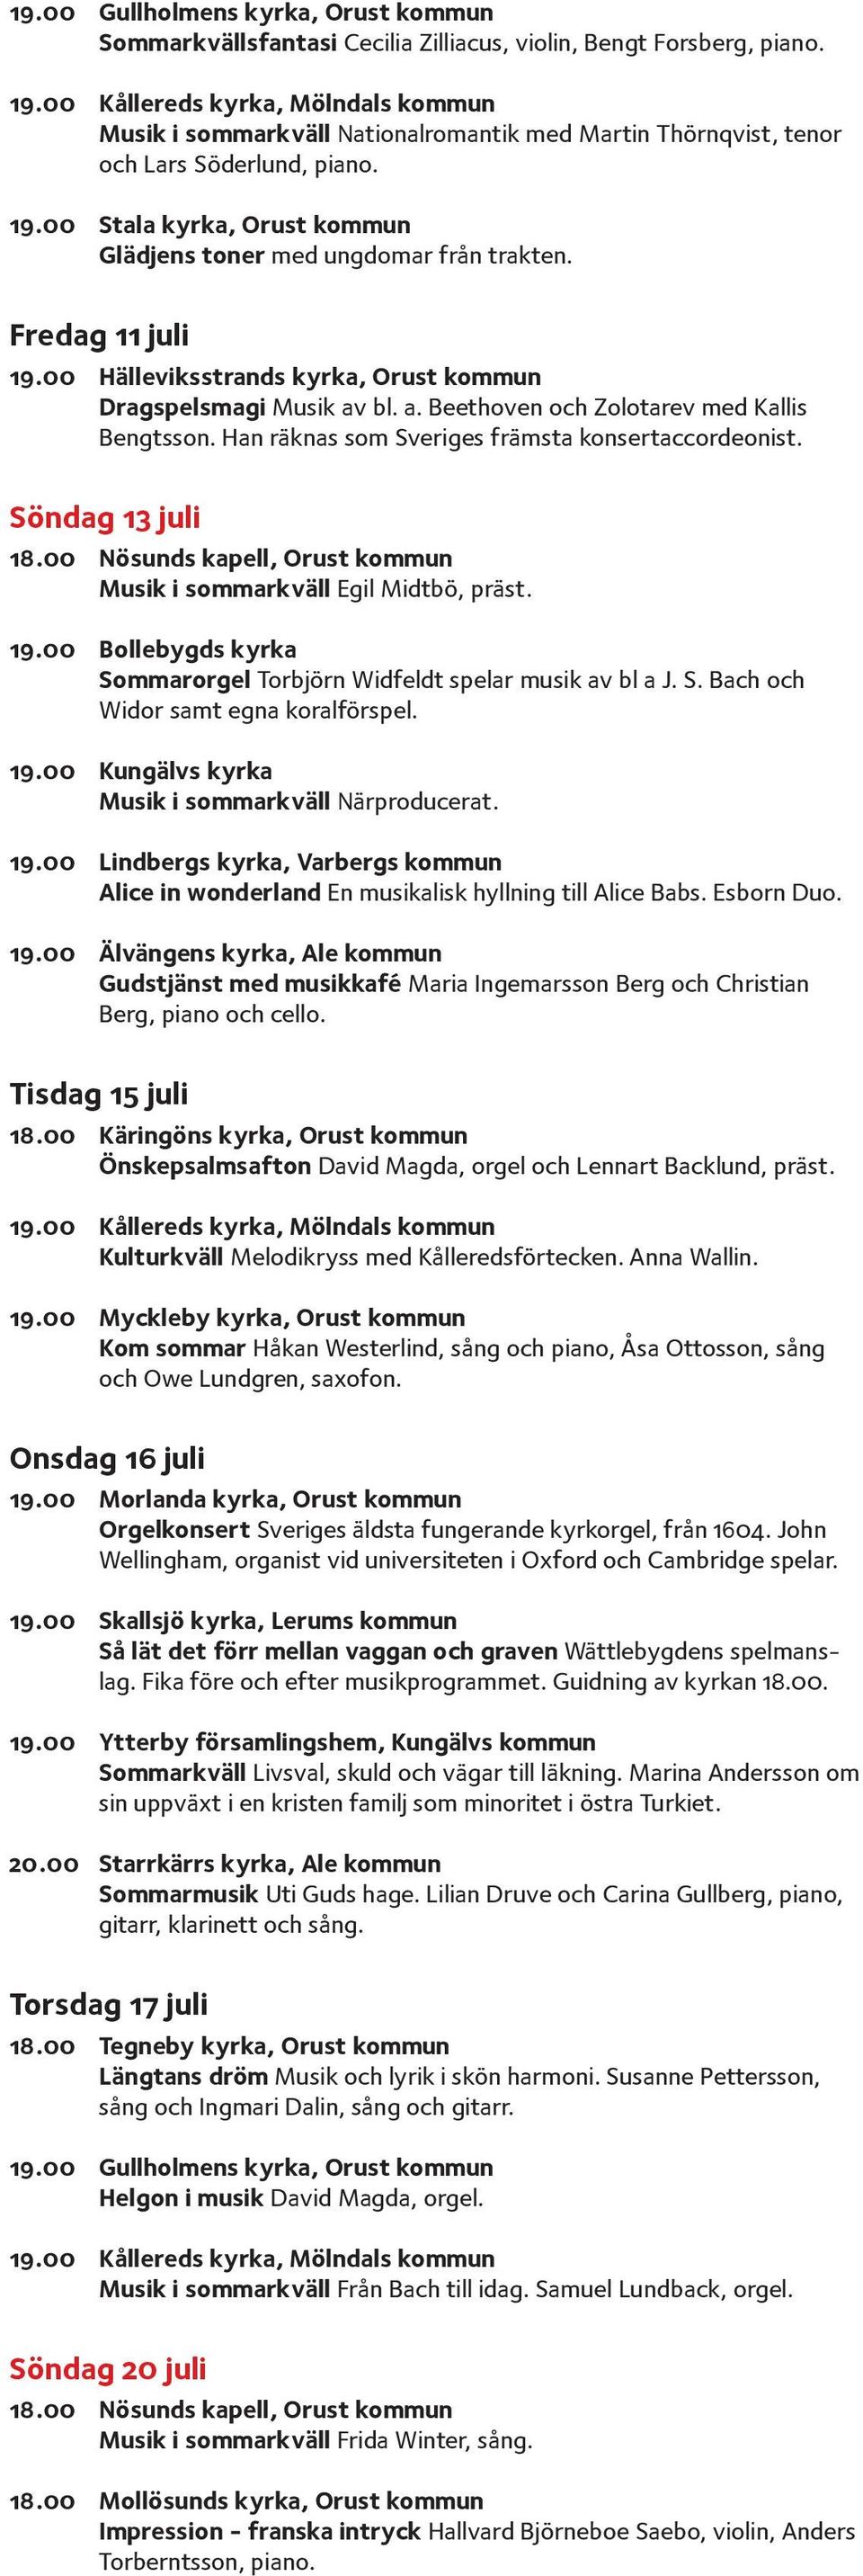 Han räknas som Sveriges främsta konsertaccordeonist. Söndag 13 juli 18.00 Nösunds kapell, Orust kommun Musik i sommarkväll Egil Midtbö, präst. 19.